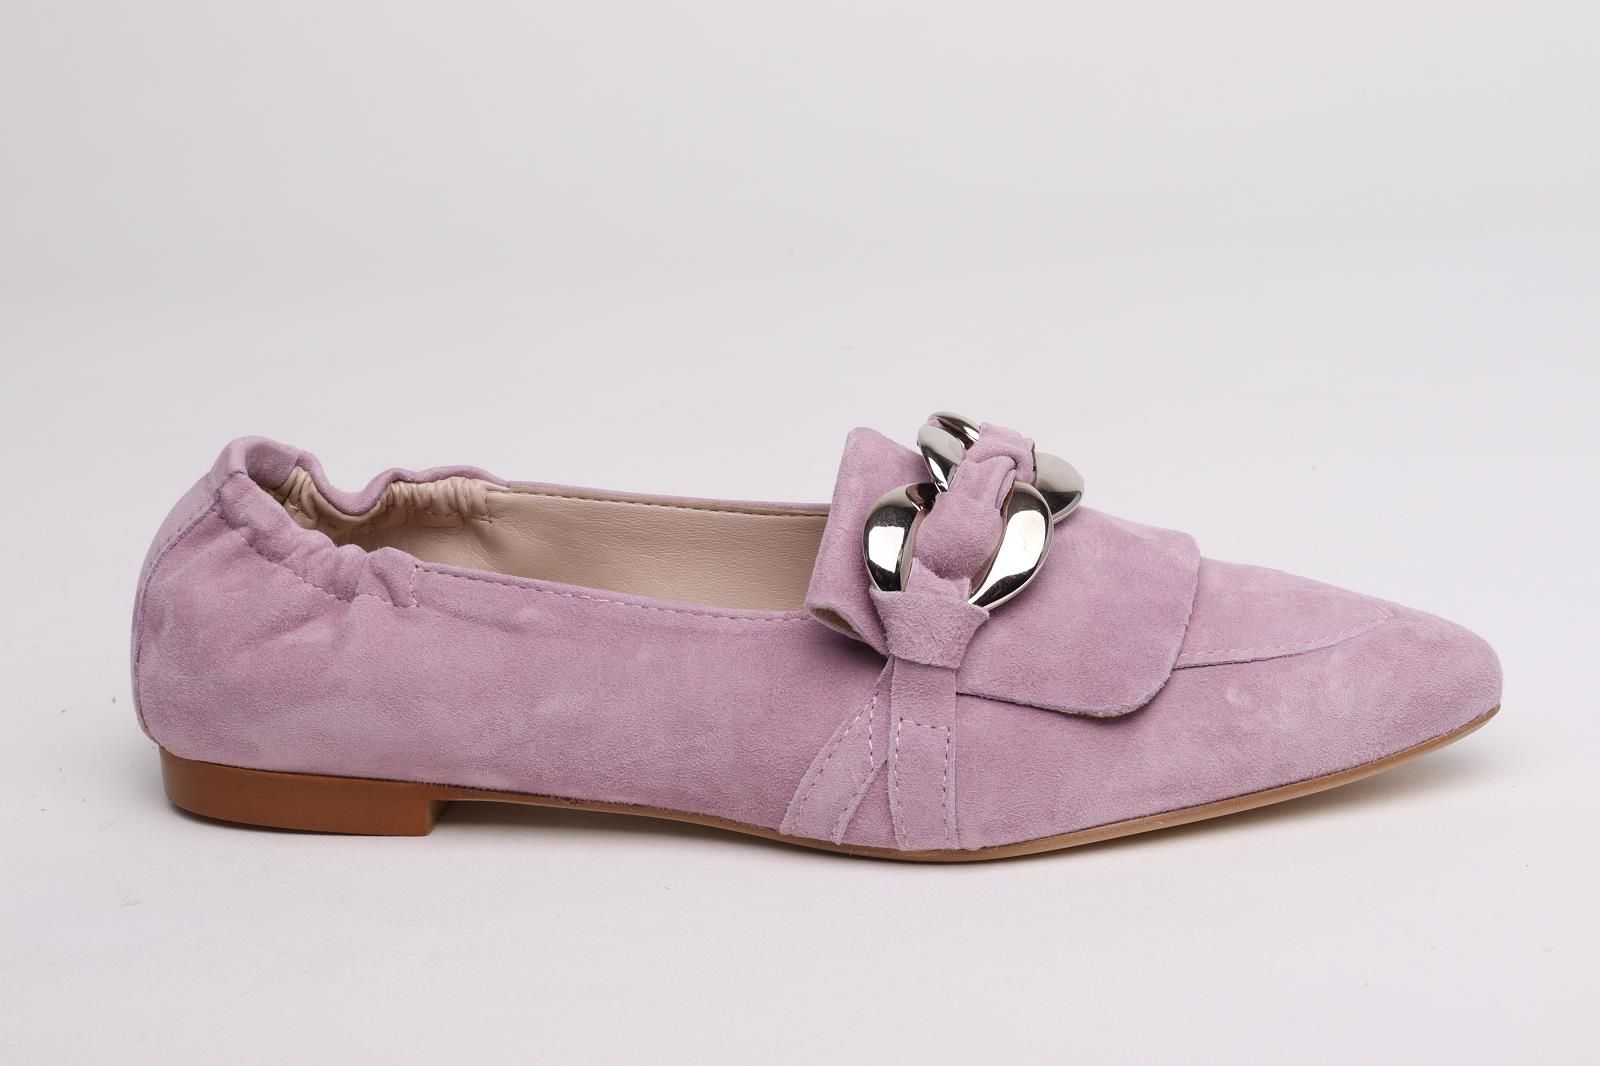 Gianluca Pisati dames mocassin / loafer in lila suede leer plat.